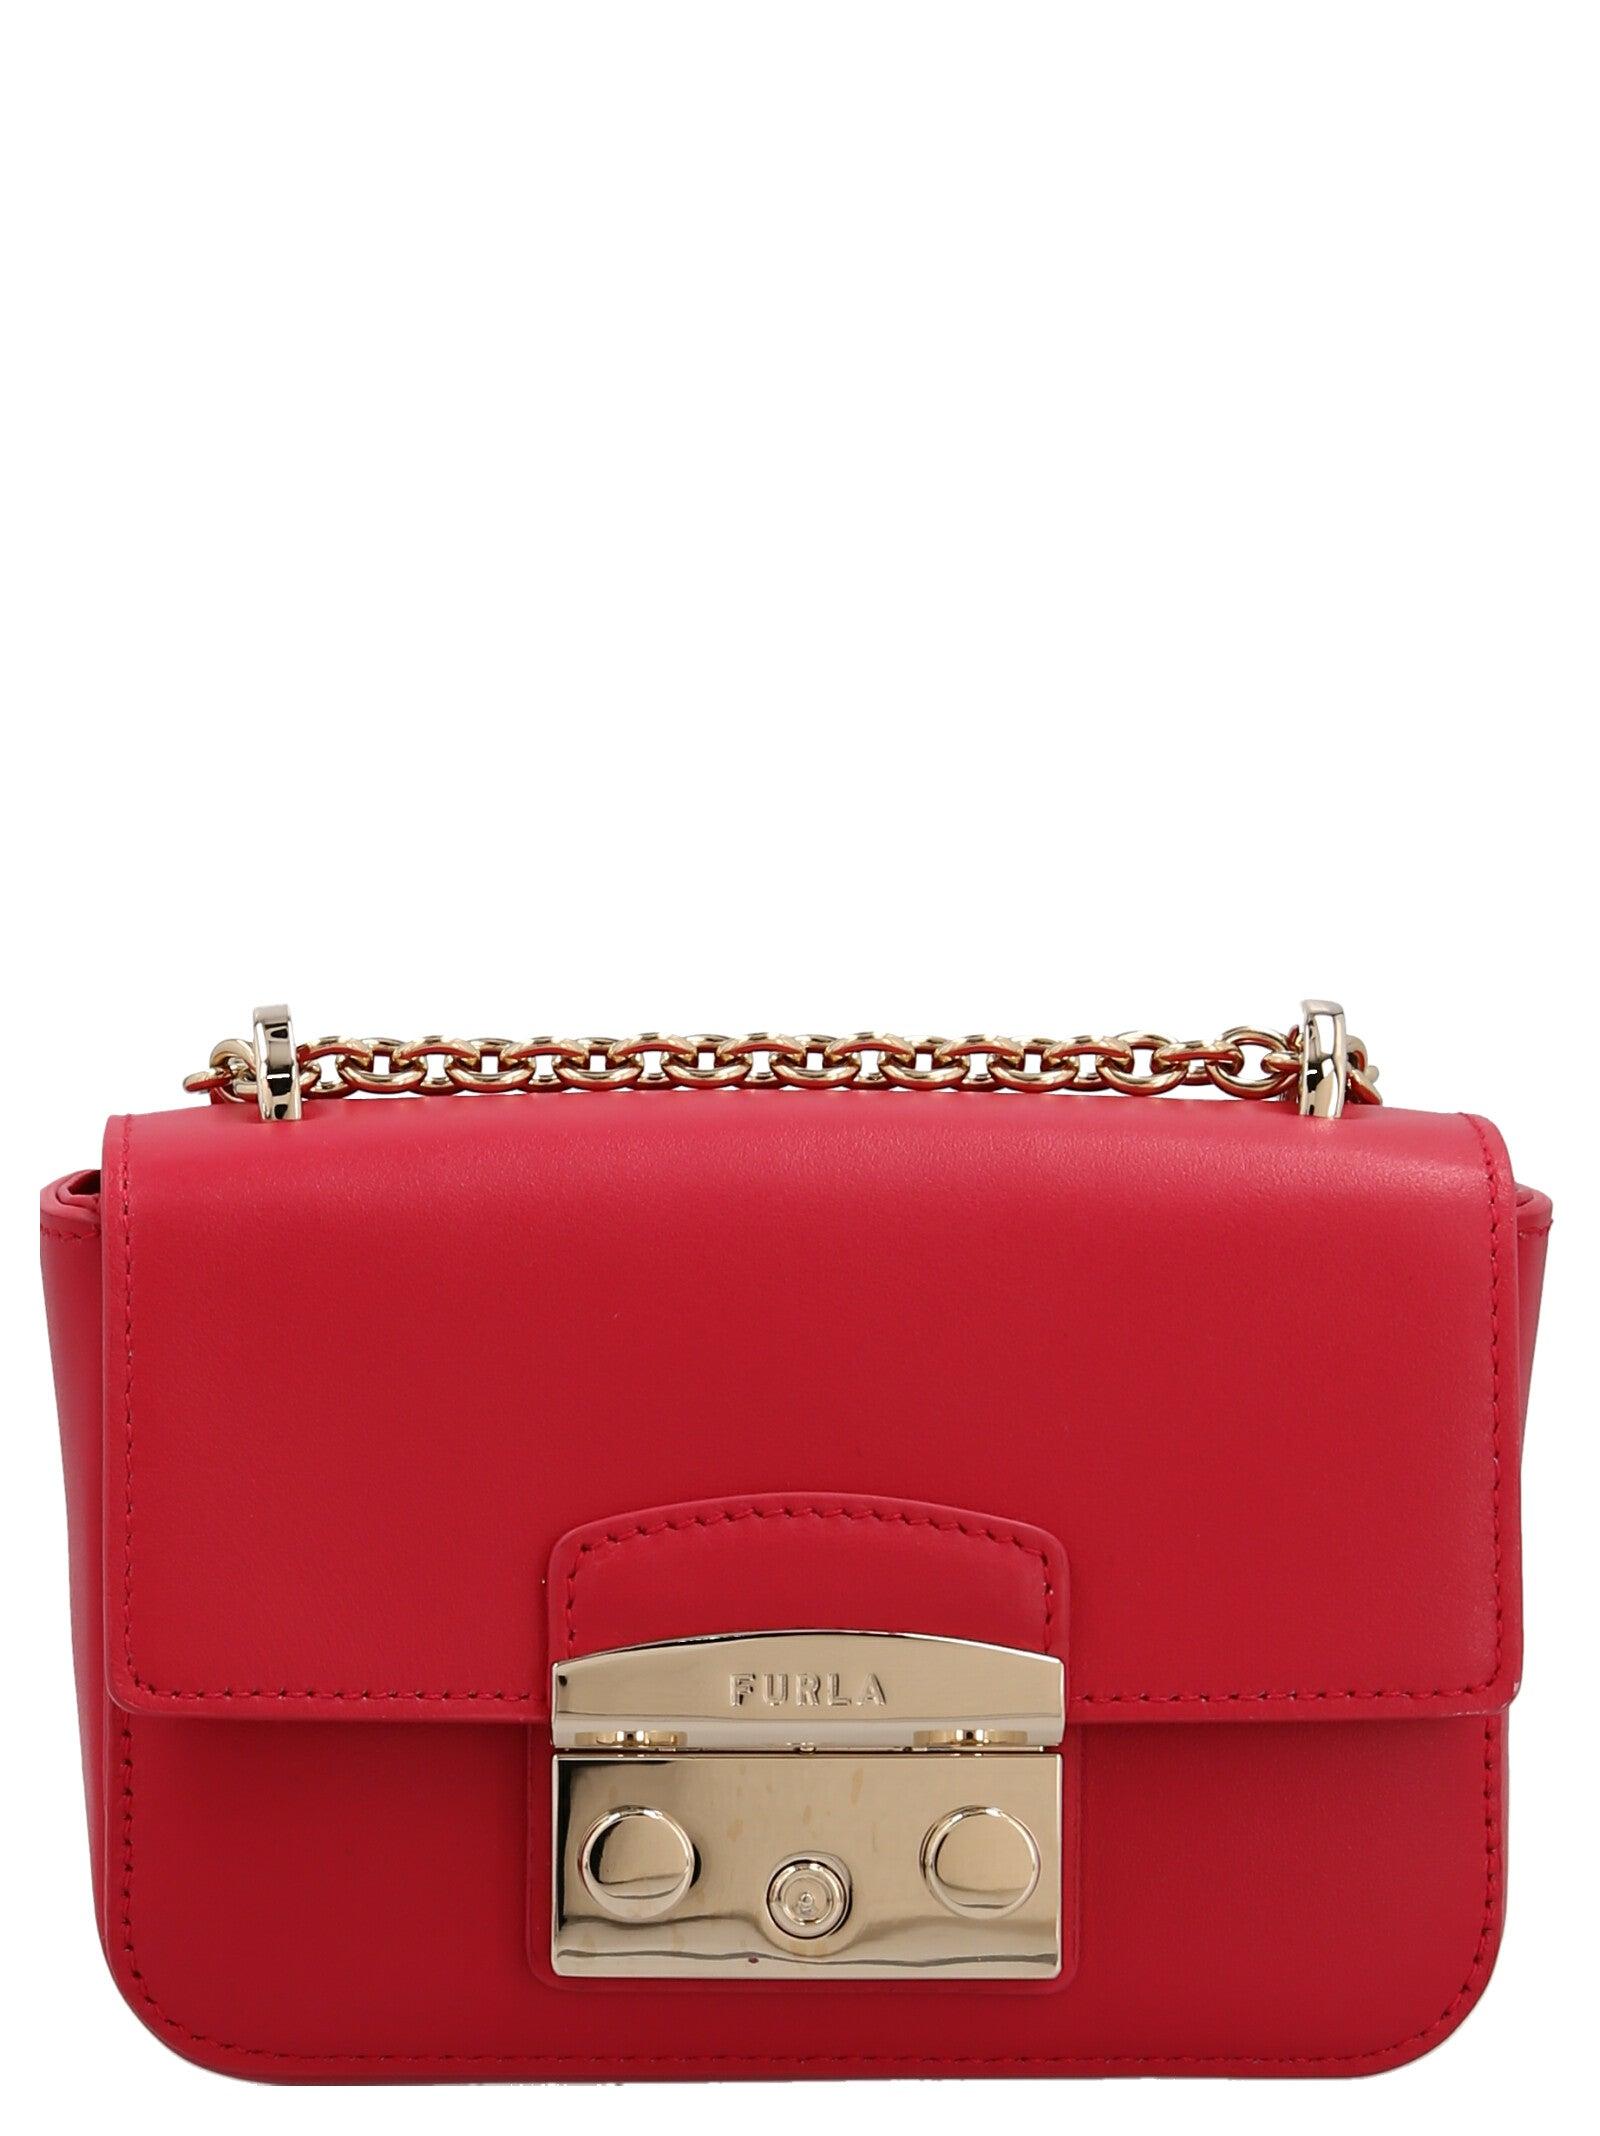 Furla 'metropolis Mini' Crossbody Bag in Red | Lyst